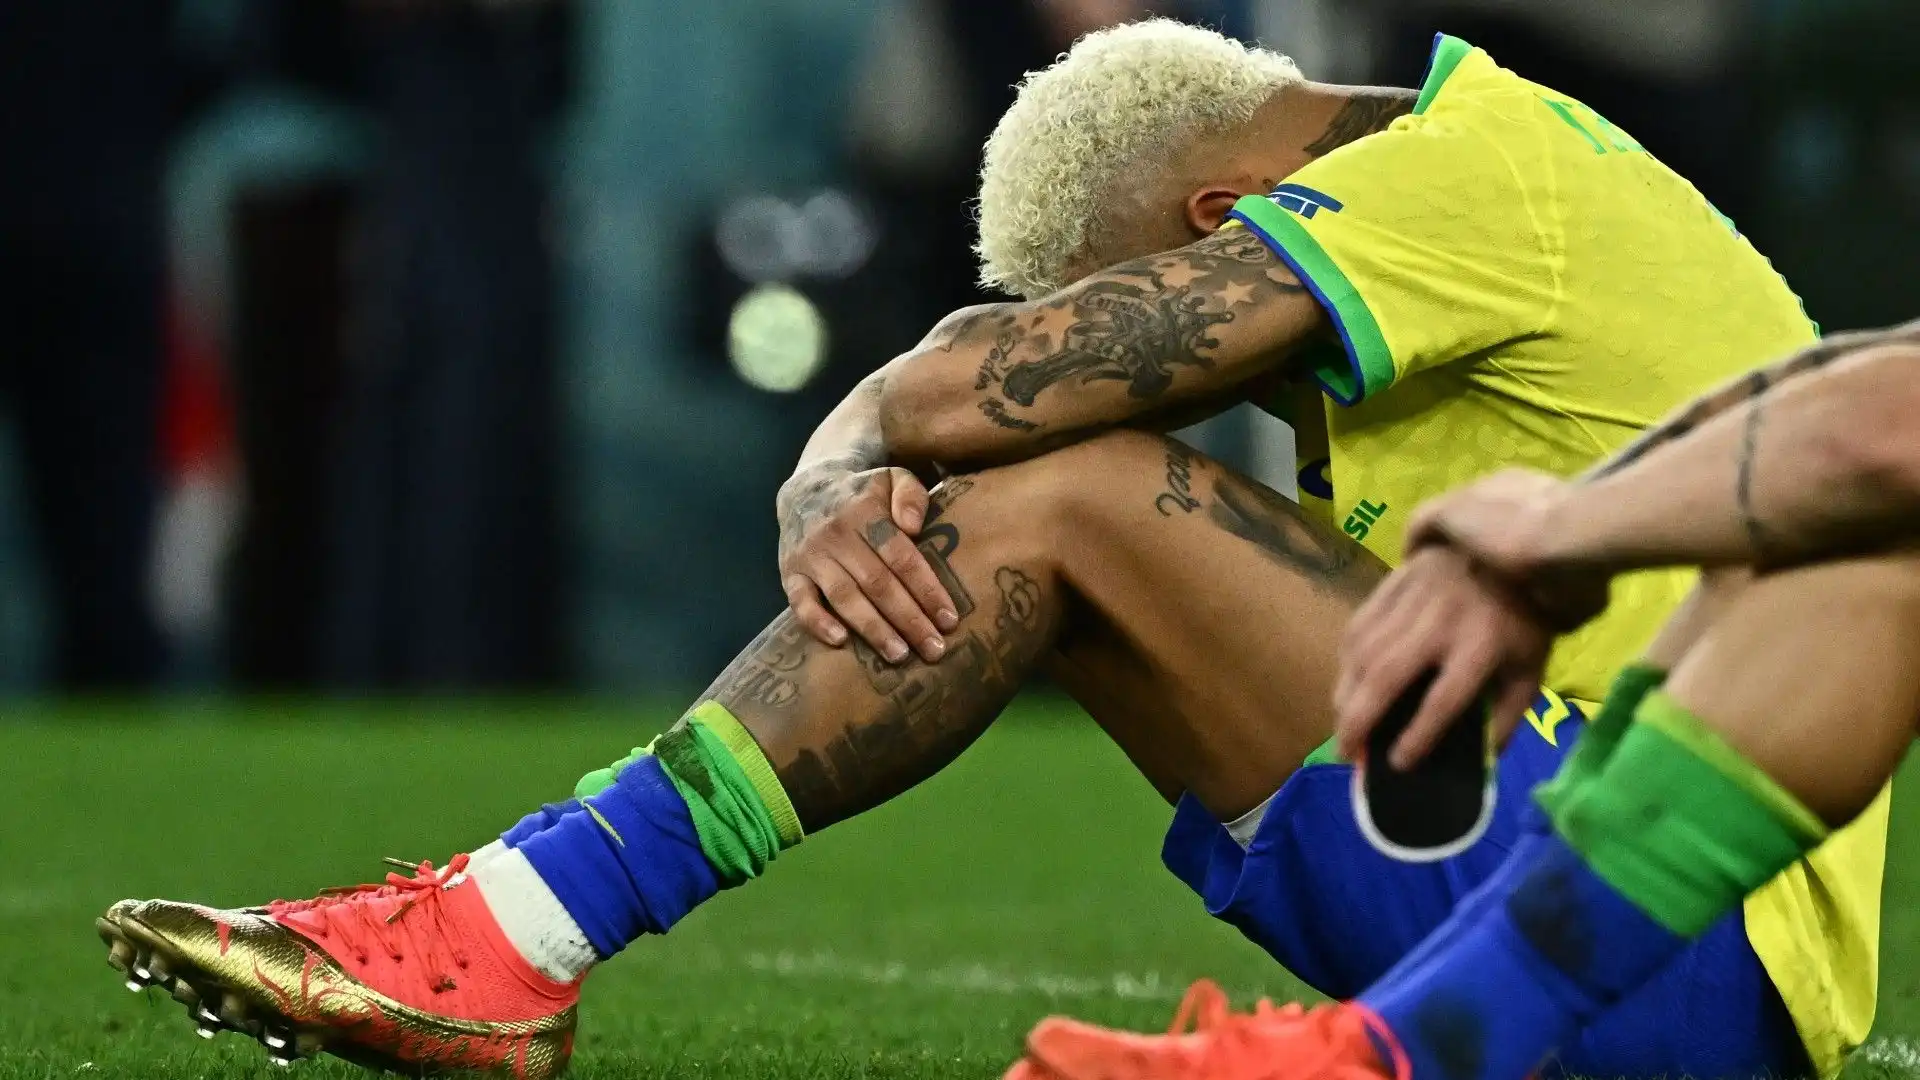 Ecco il fuoriclasse brasiliano in lacrime